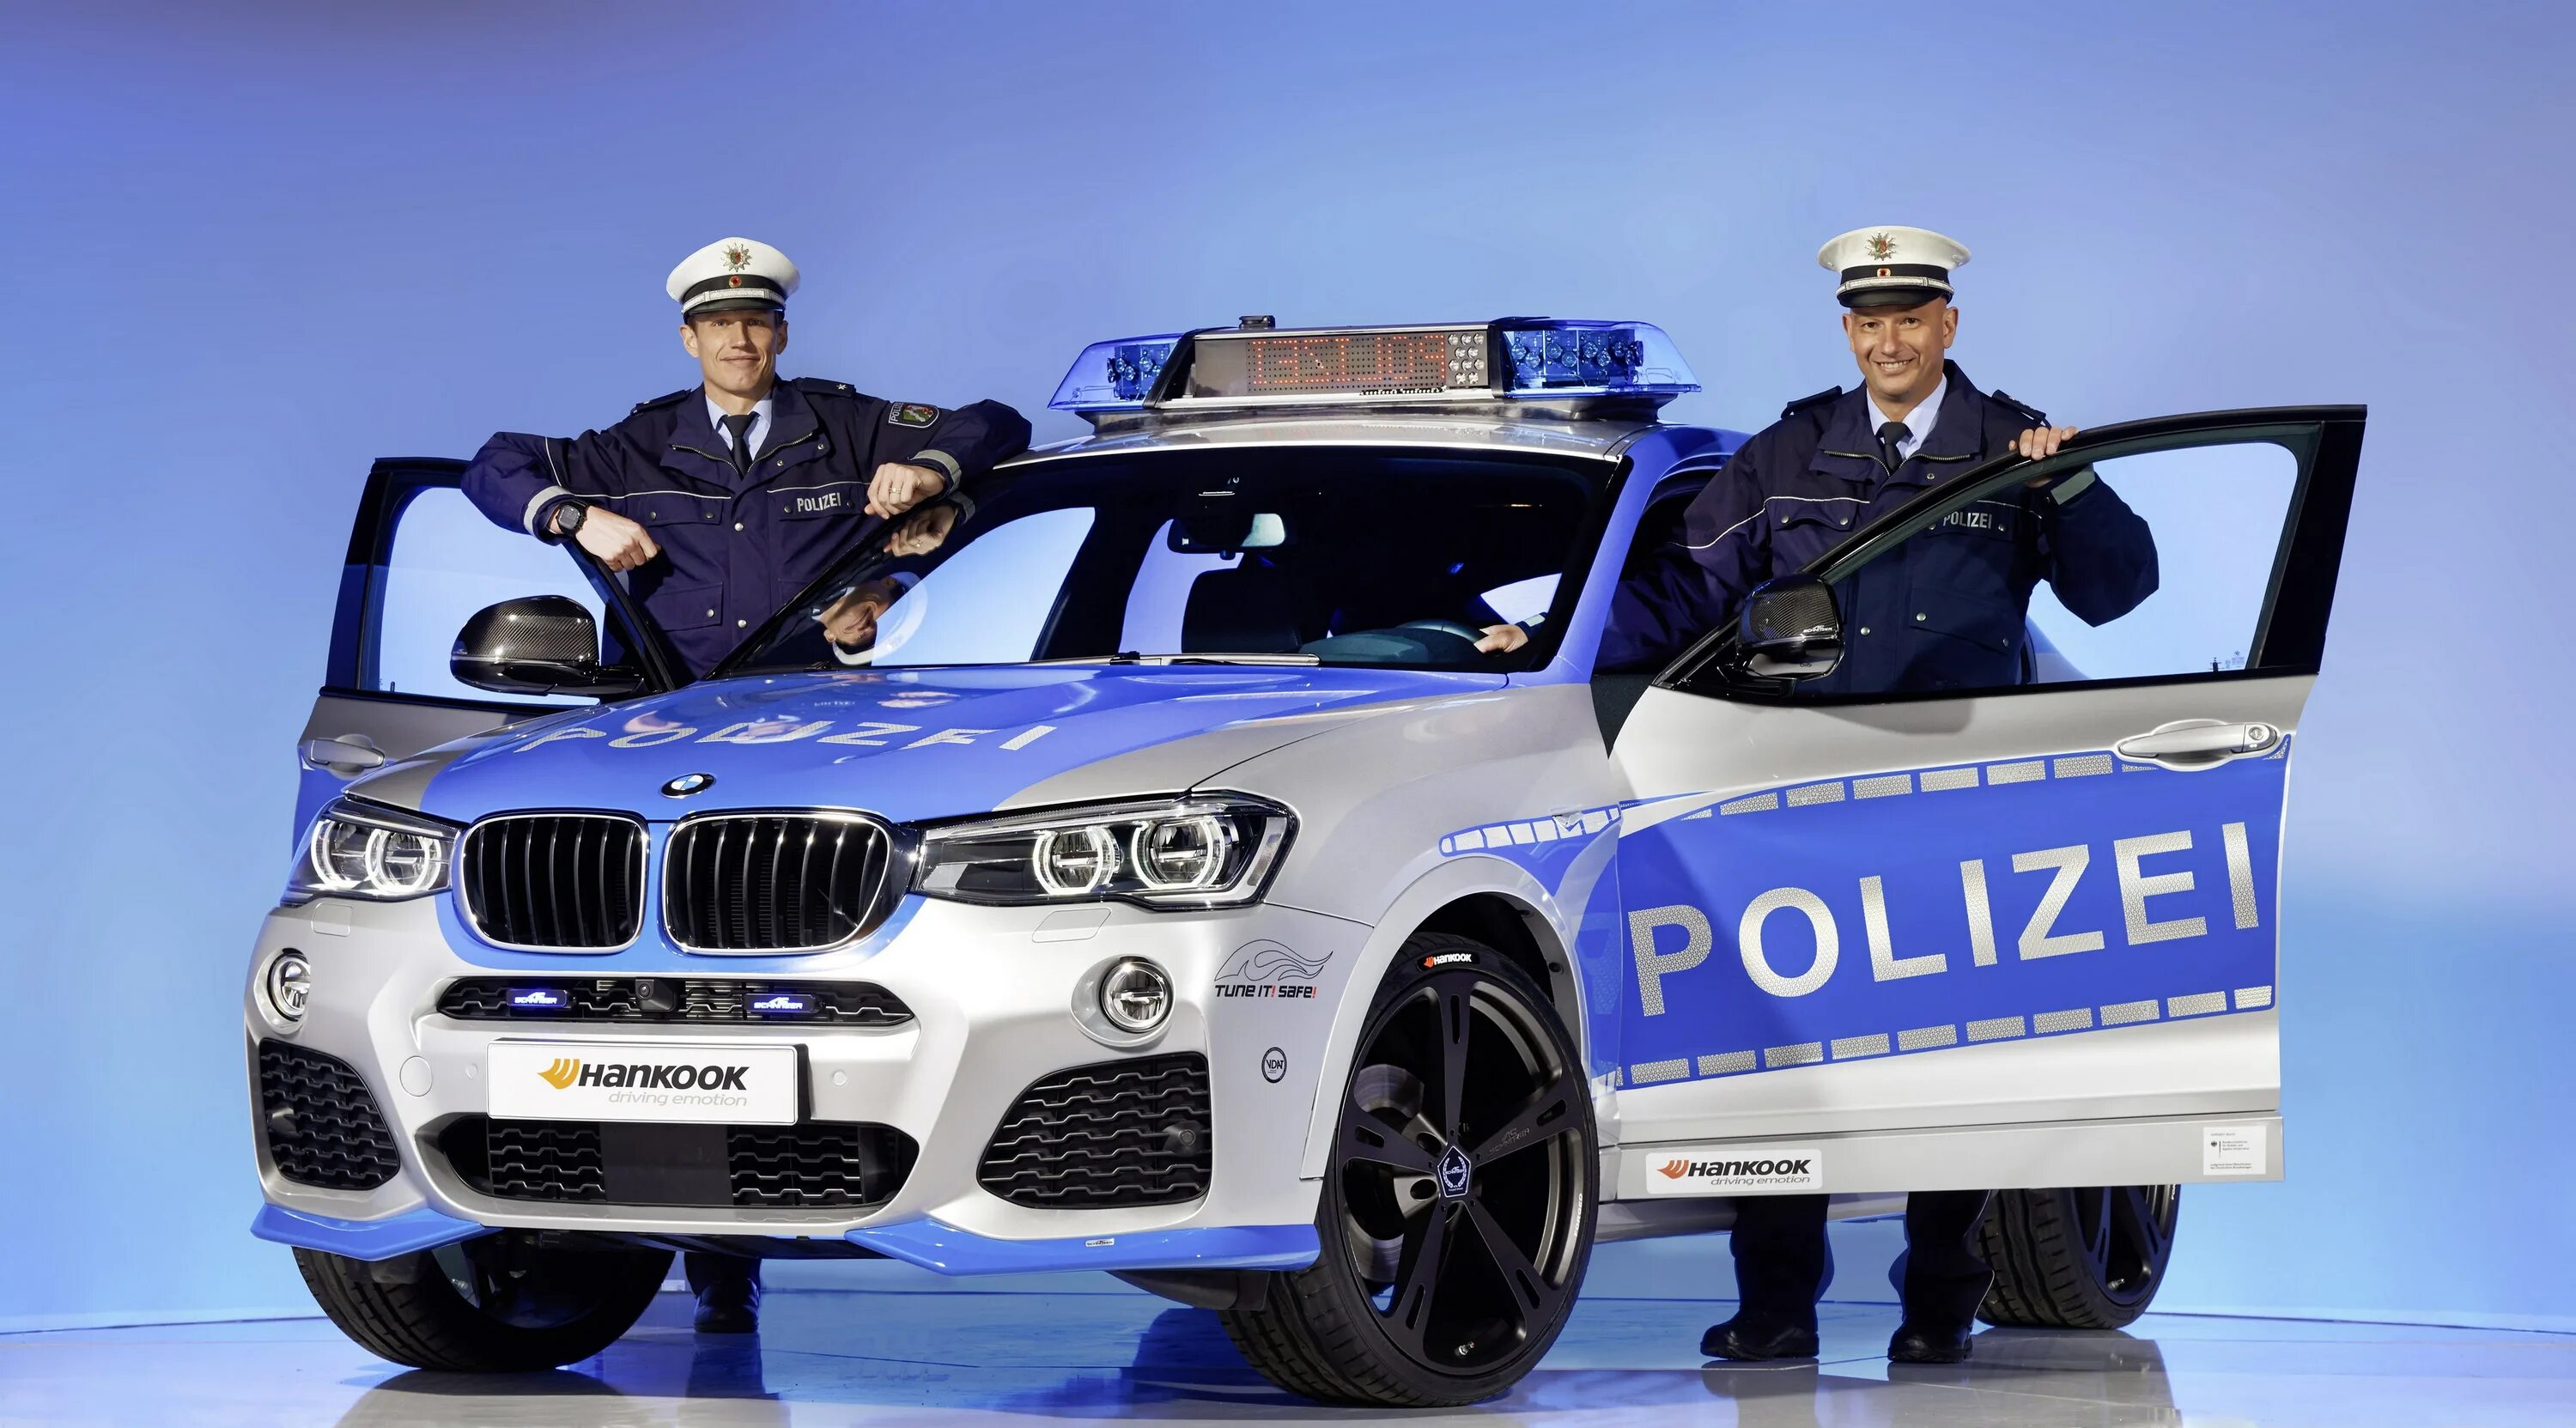 BMW x6 Polizei. Полицейский джип BMW x6. Машина "полиция". Автомобиль «полиция». Машинка про полицию